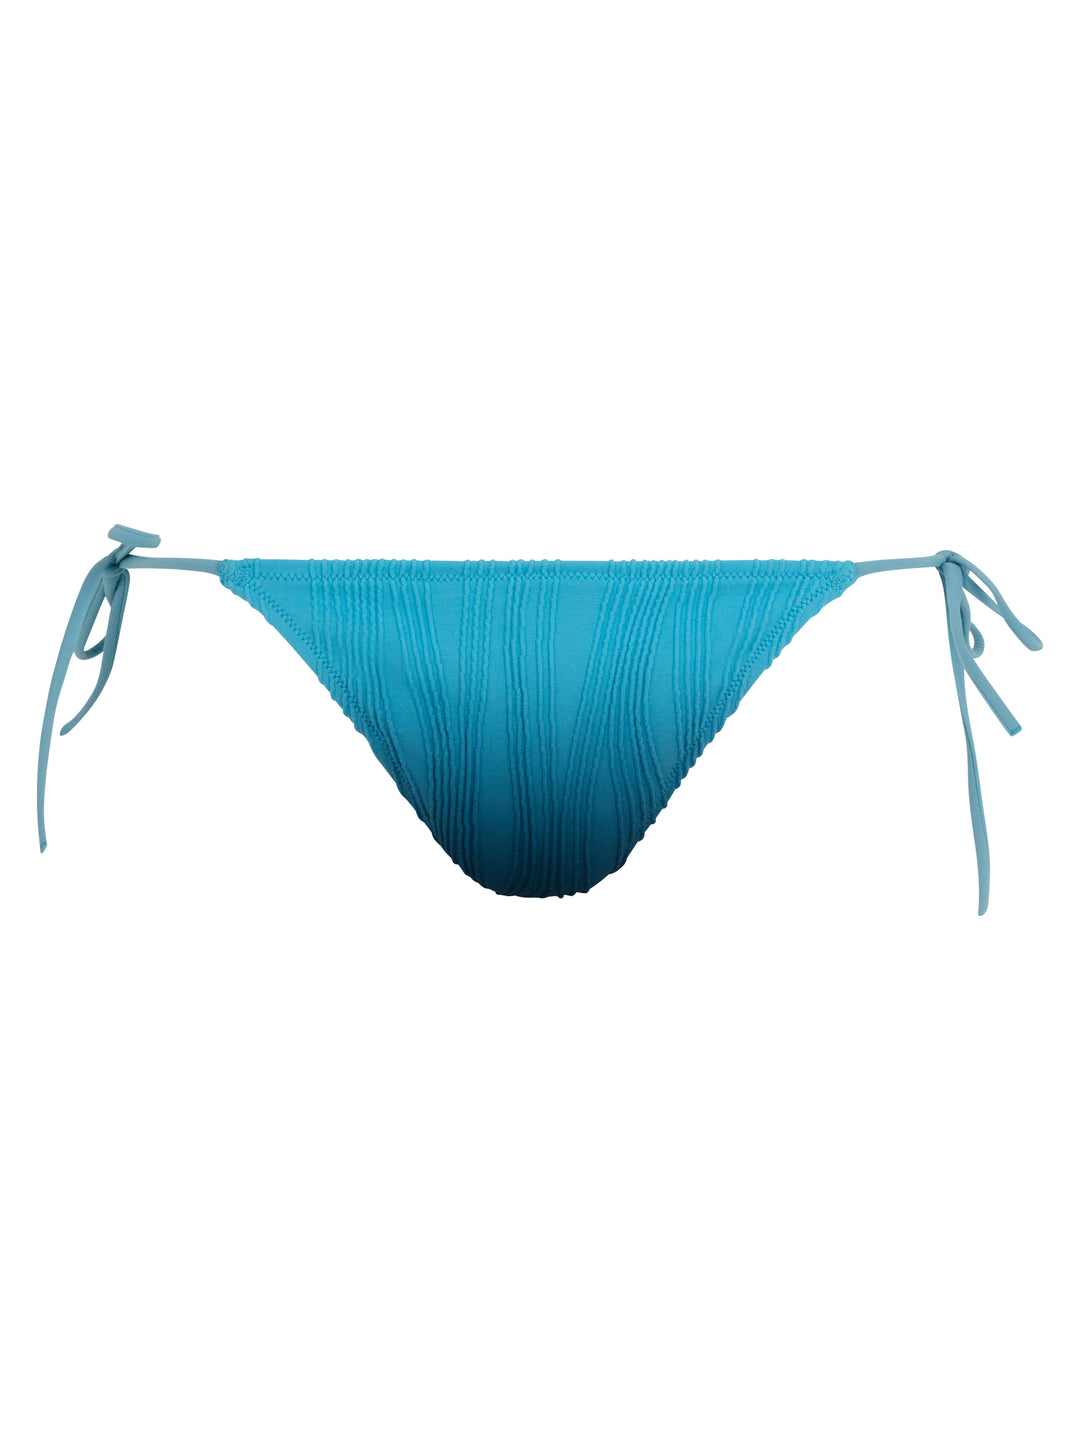 Costume da bagno Chantelle - Bikini Swim Taglia unica Cravatta e tinta blu